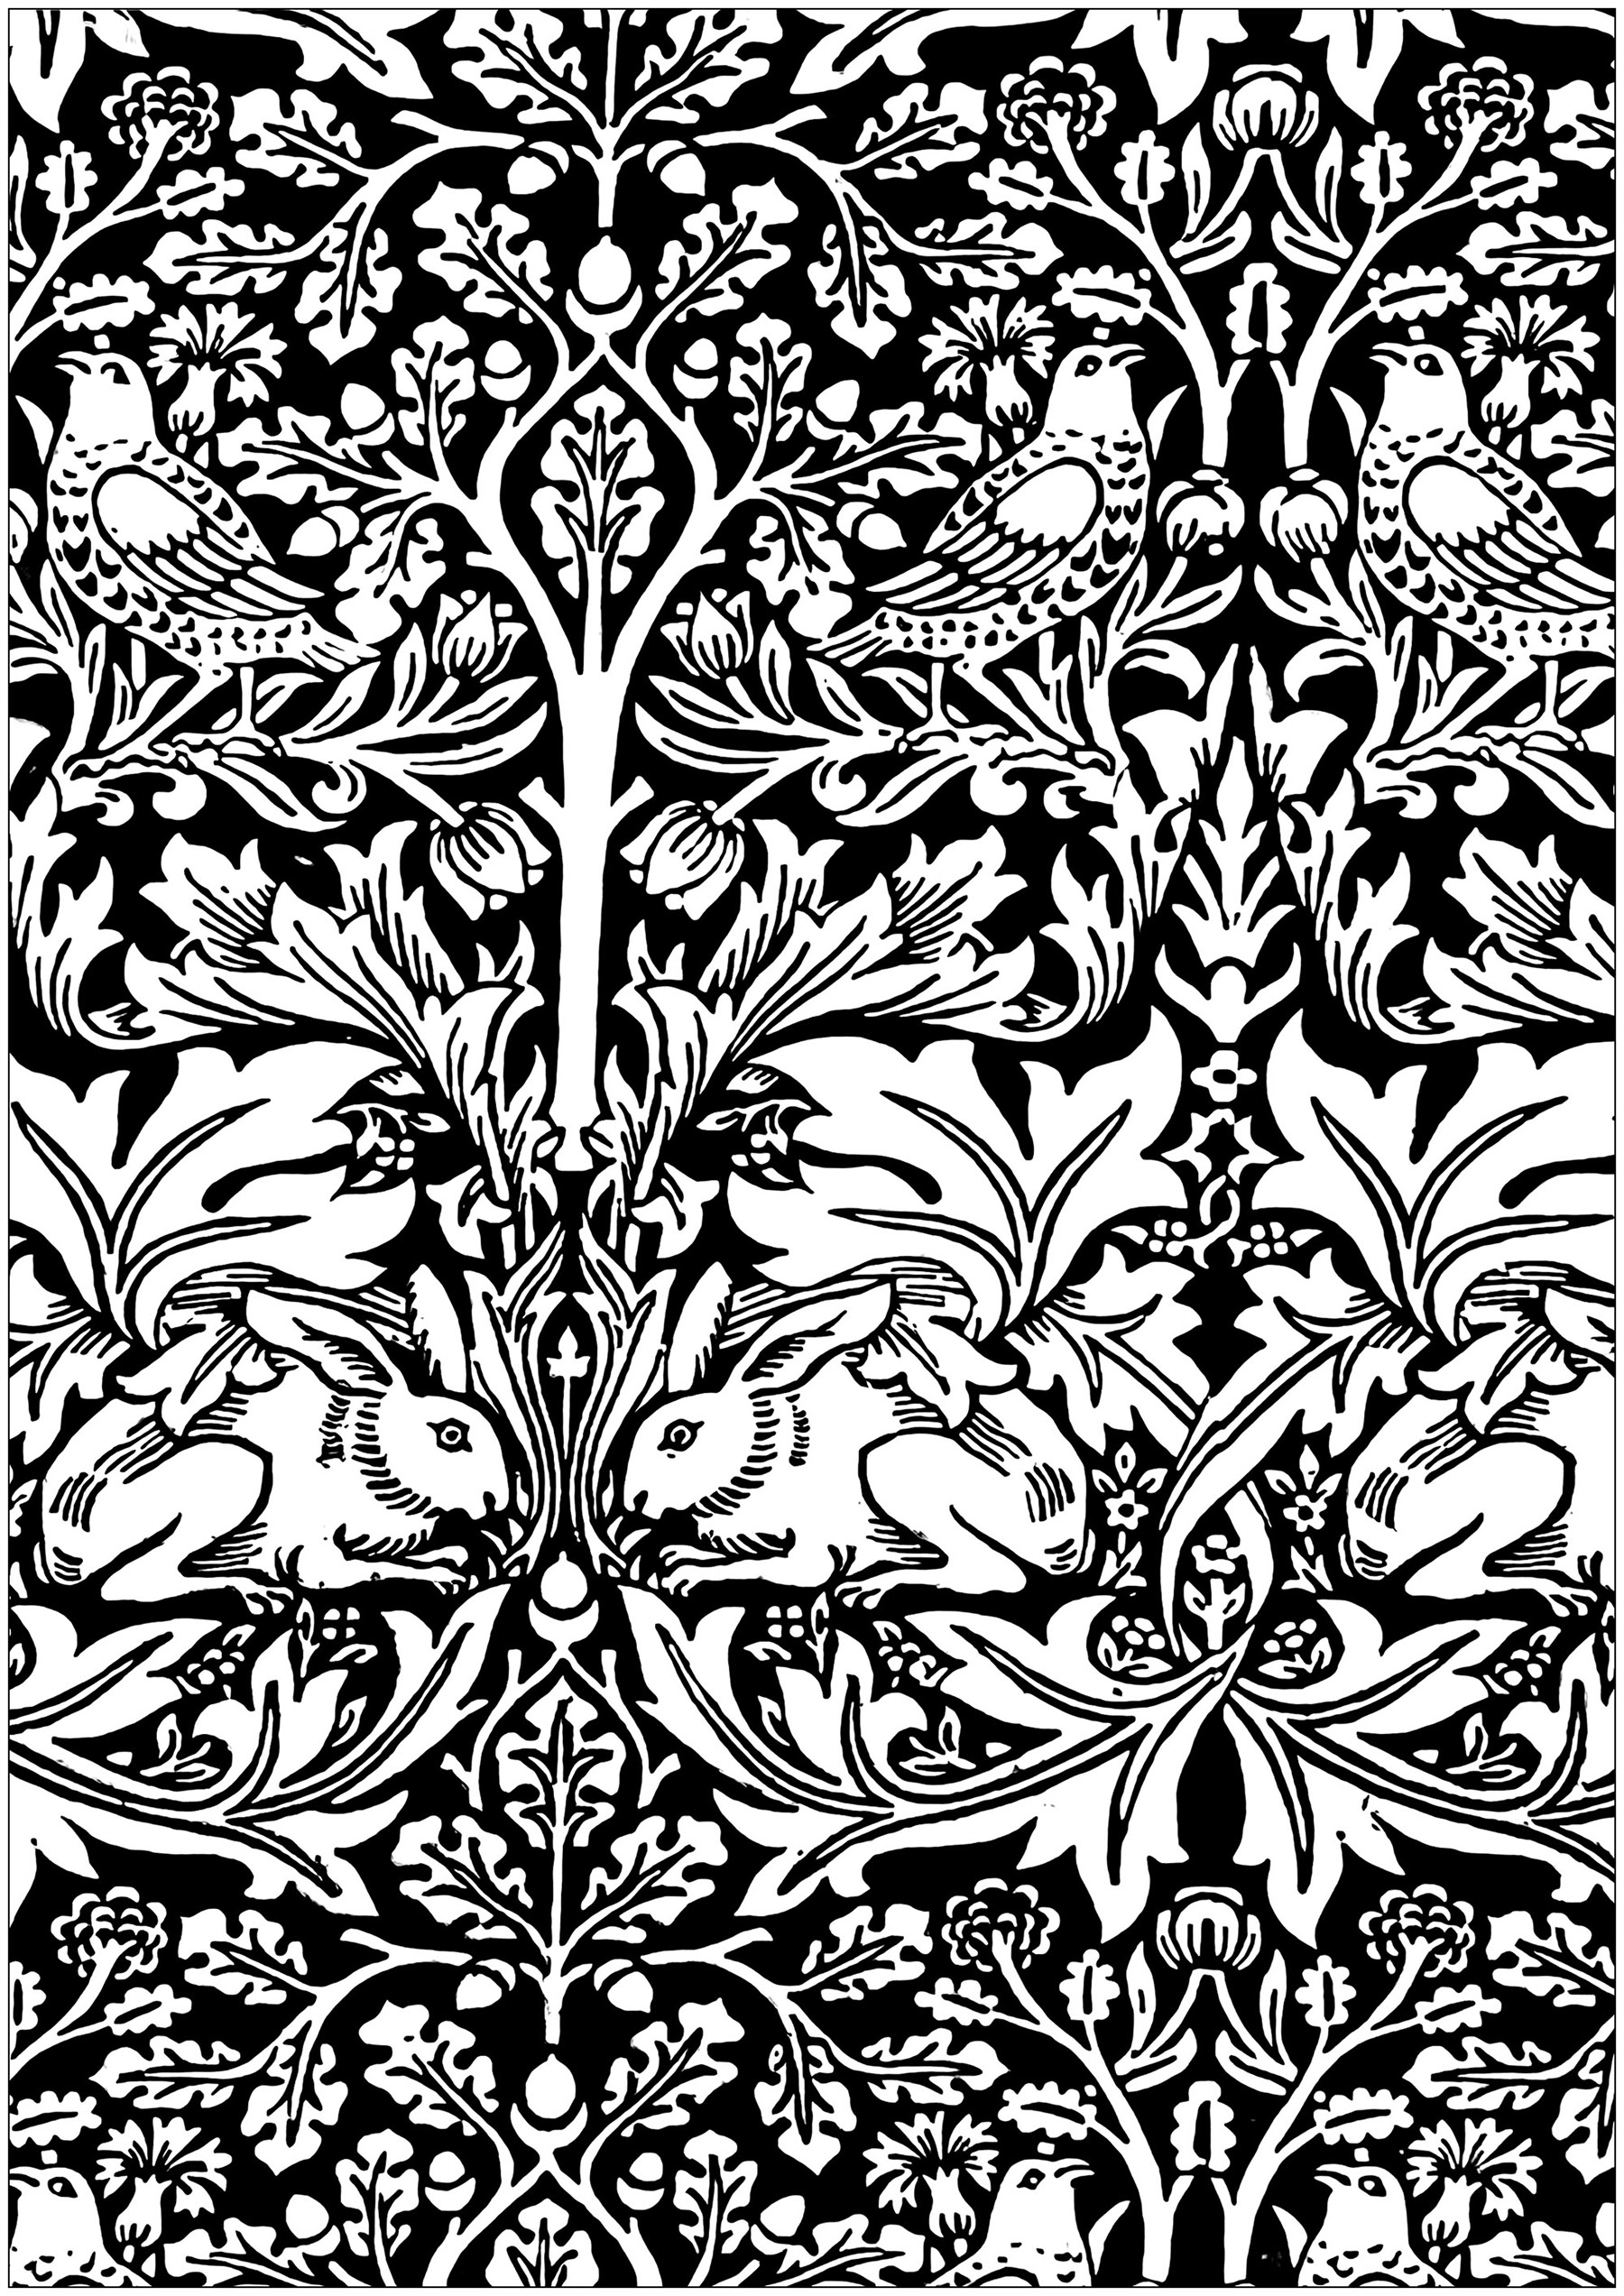 Coloriage créé à partir d'une planche de coton imprimé de William Morris : 'Brother rabbit' (1882). Le titre s'inspire d'un conte traditionnel afro-américain Brer Rabbit, qui fut adapté et publié par Joel Chandler Harris en 1881. L'utilisation par Morris des animaux et des oiseaux appariés parmi le feuillage fantastique dans cette conception illustre clairement son intérêt pour les textiles européens médiévaux.